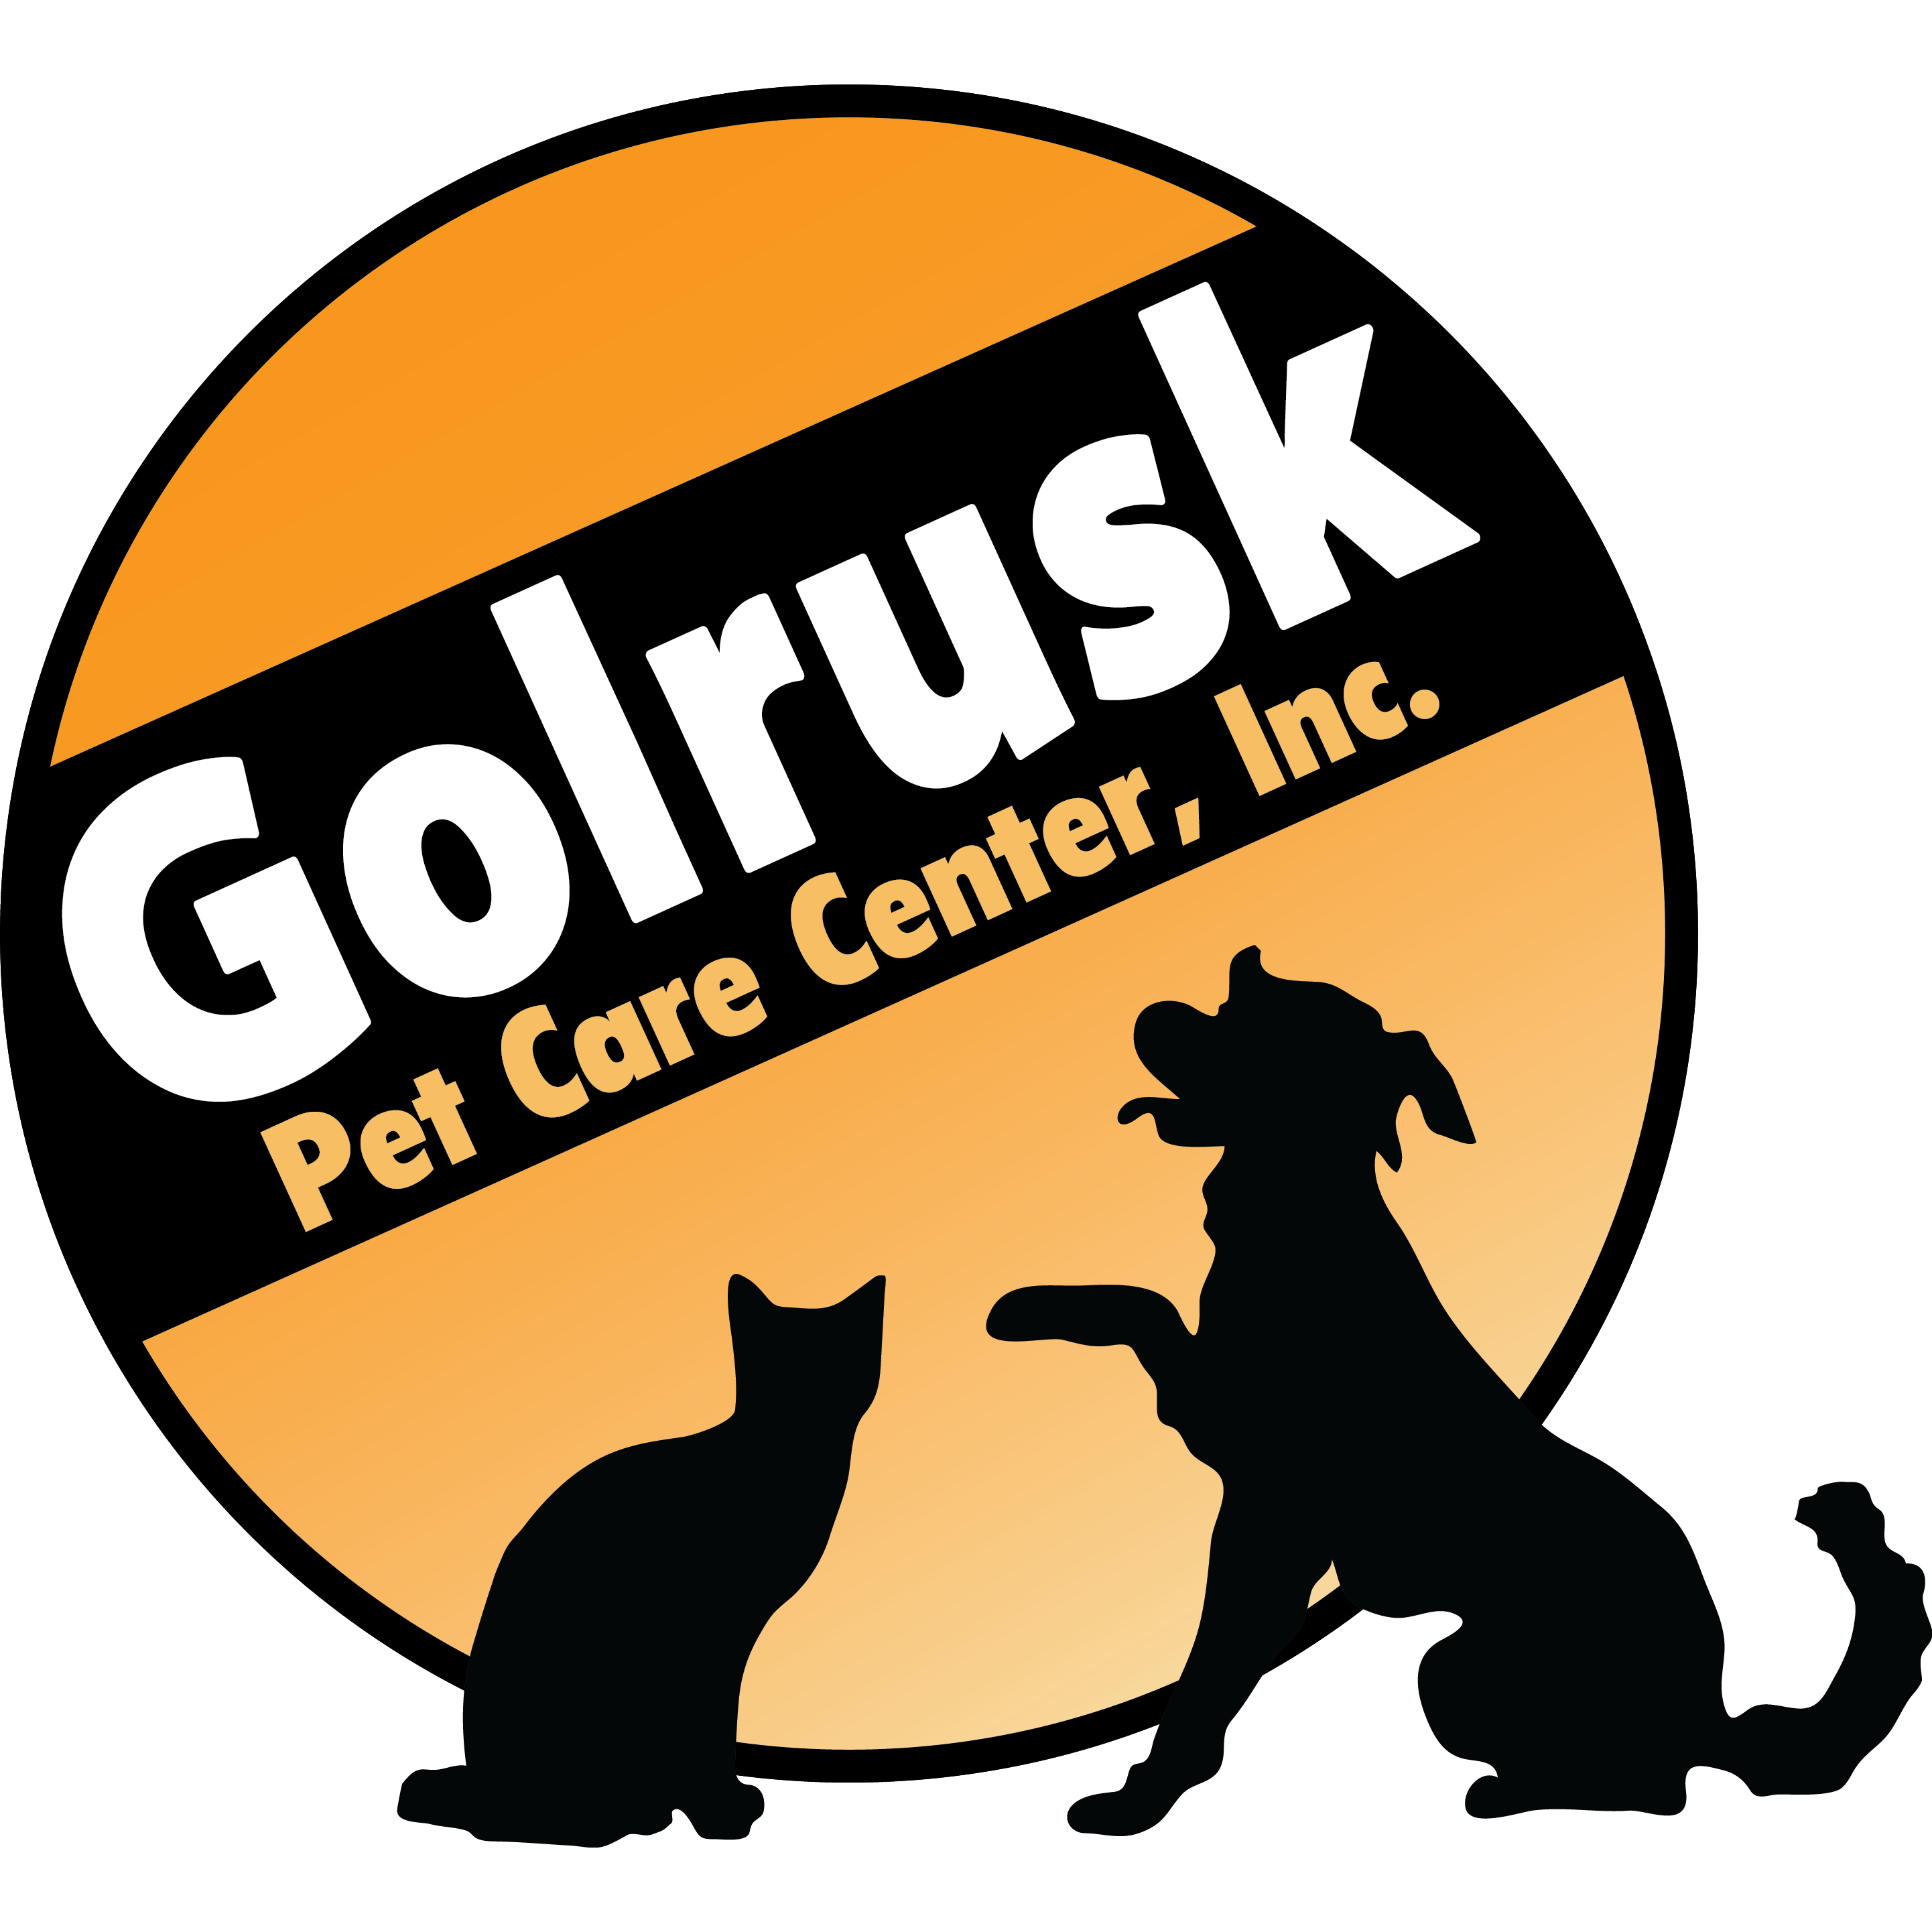 Golrusk Pet Center